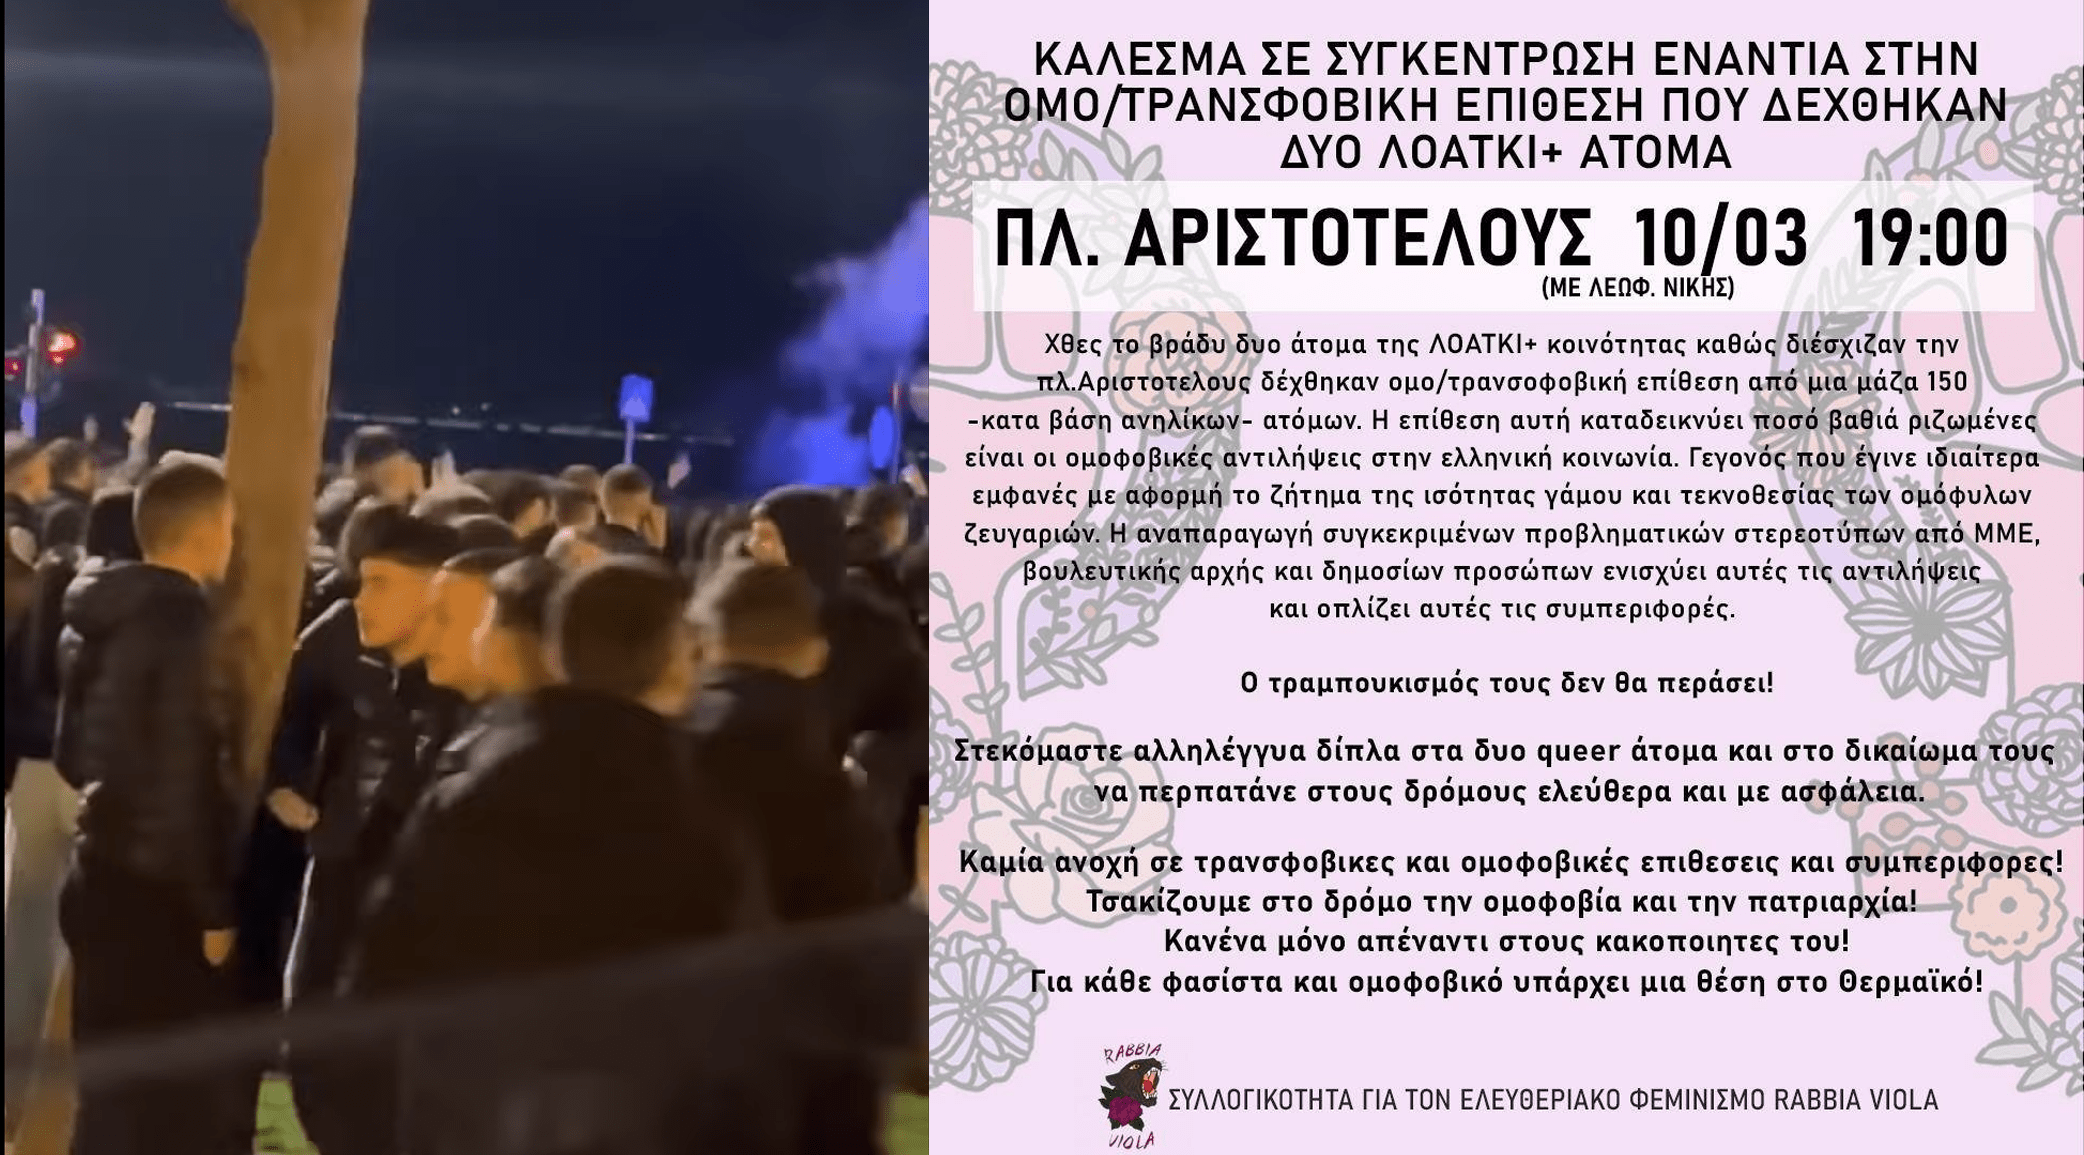 Συγκέντρωση ενάντια στην ομοτρανσφοβία στη Θεσσαλονίκη